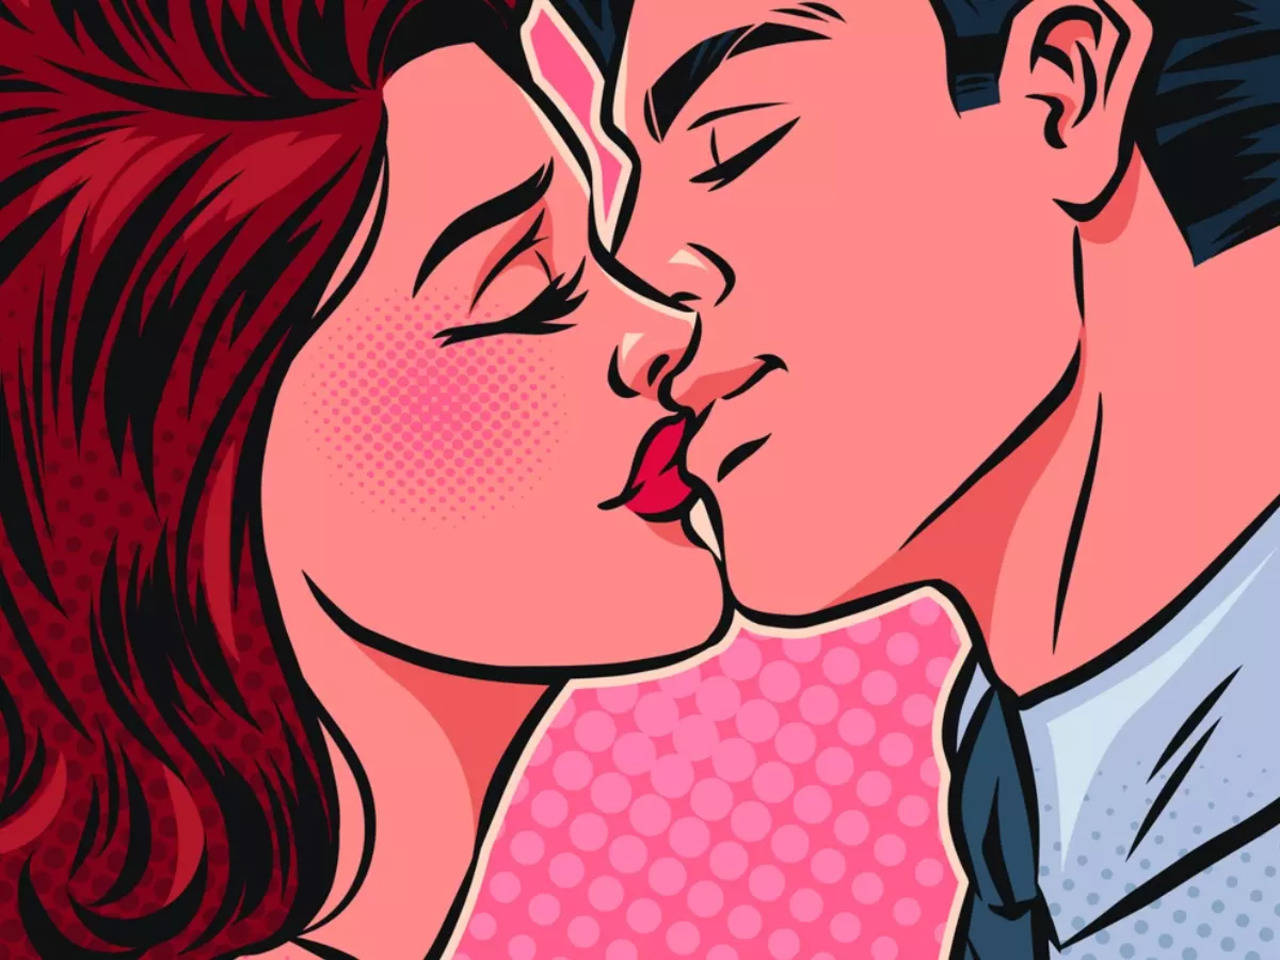 Baciare con la lingua: qual è il significato nascosto?